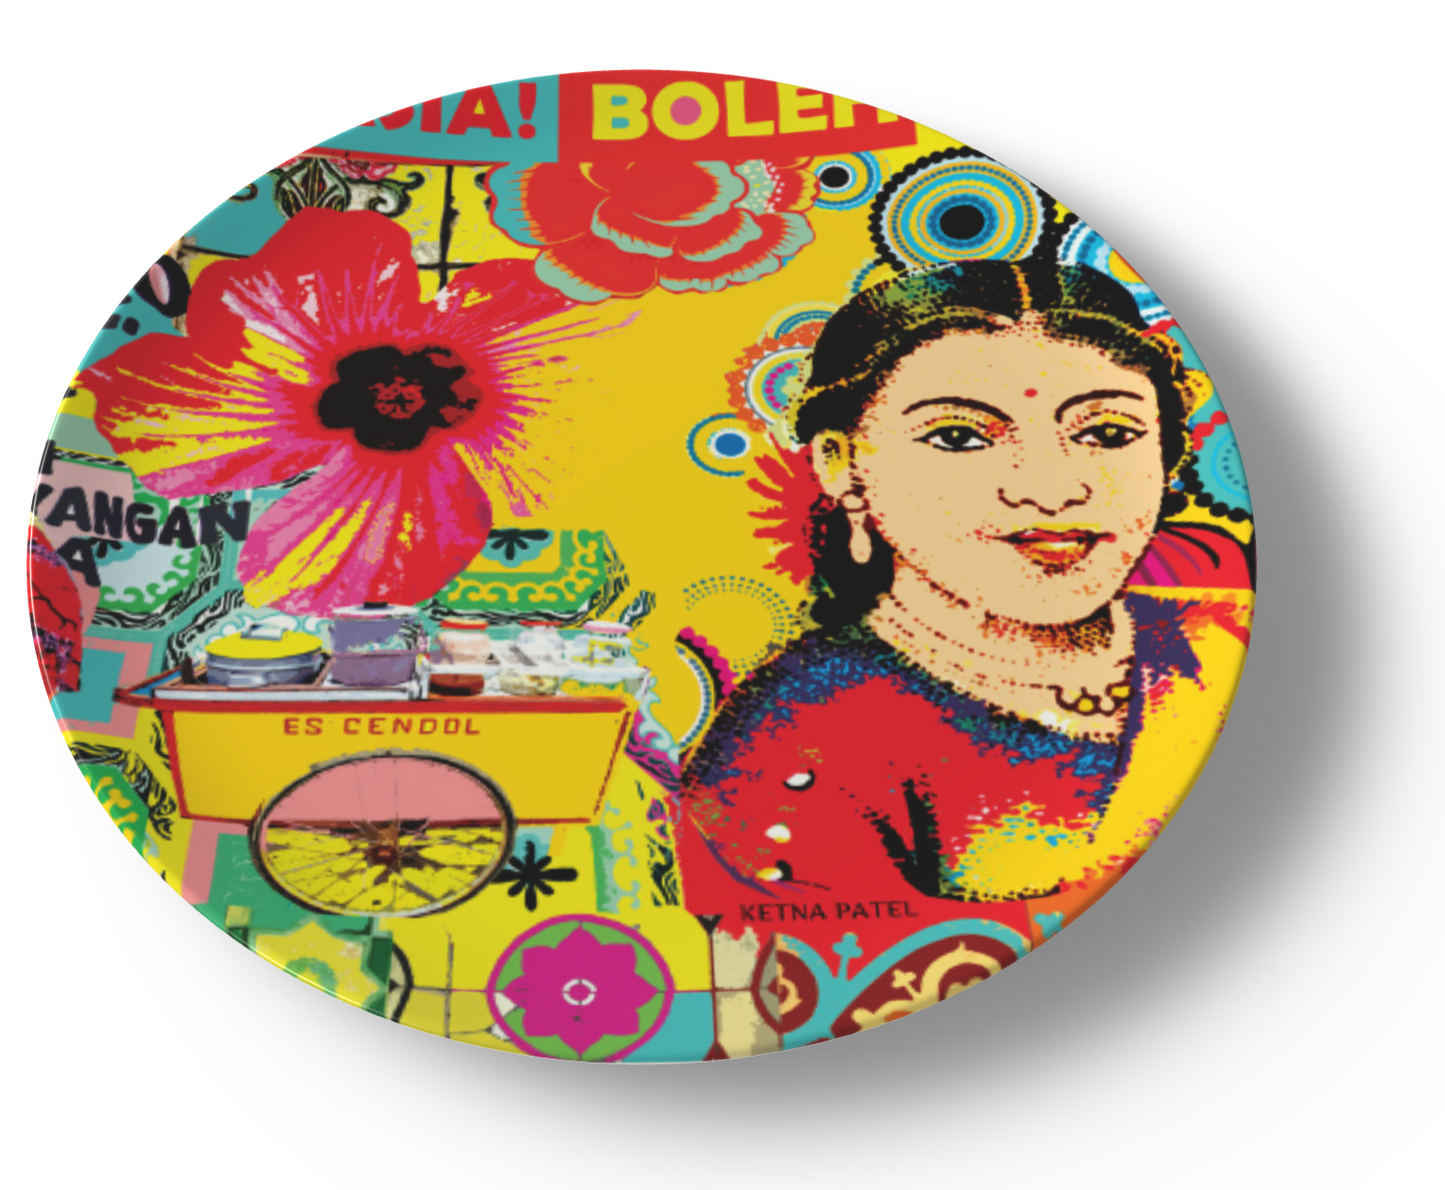 'Chalo Asia boleh boleh' ceramic dinner plate